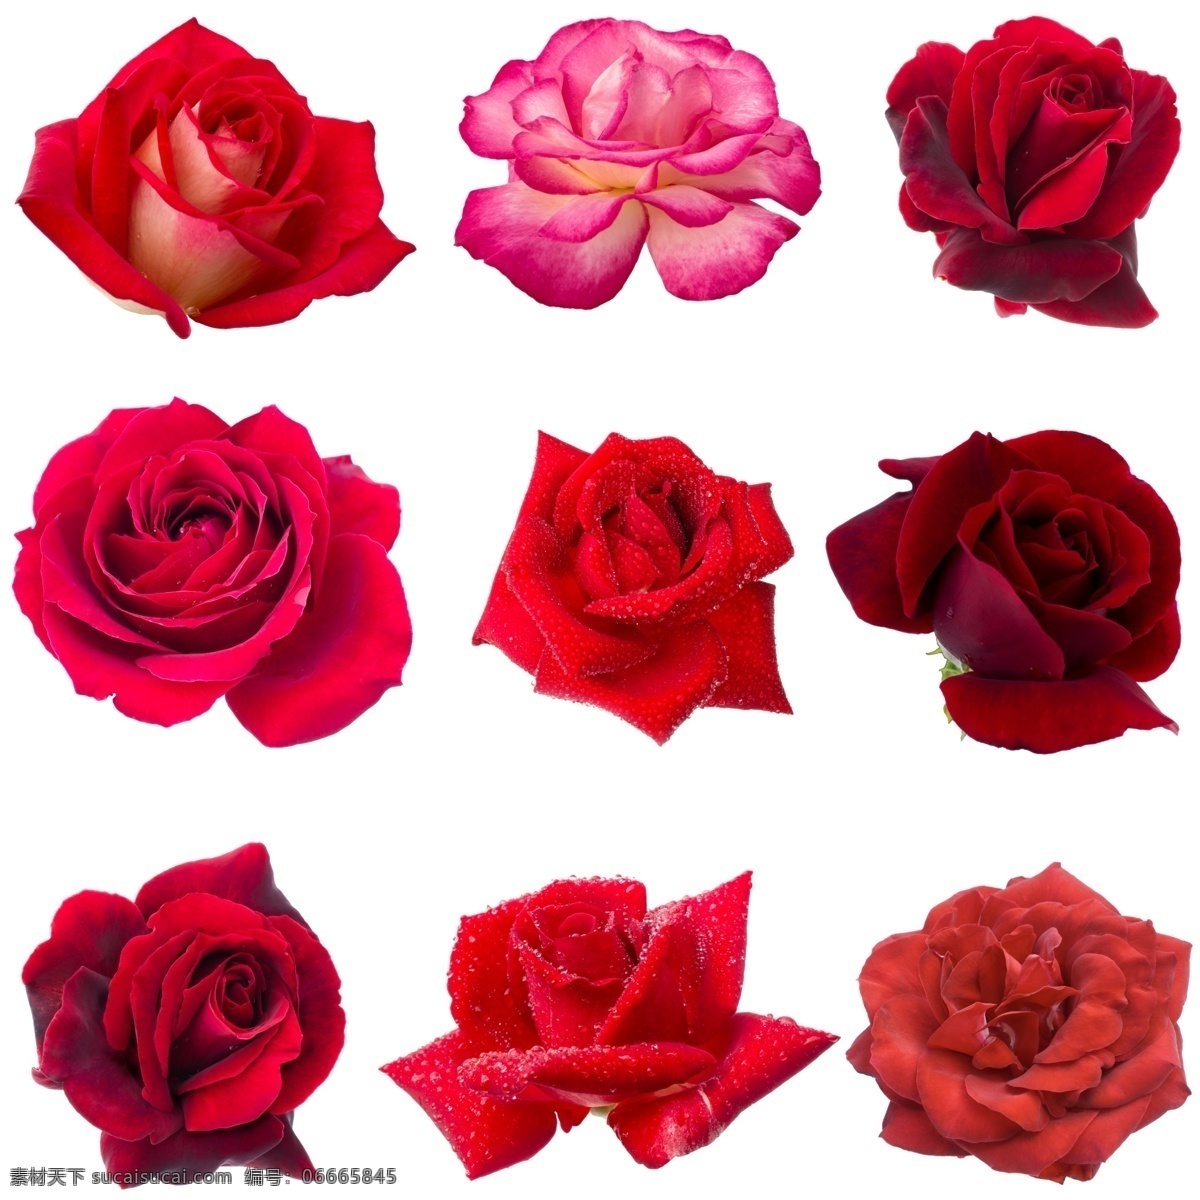 玫瑰 红玫瑰 黄玫瑰 花 植物 美丽 妖艳 装饰 饰品 矢量玫瑰花 玫瑰花插画 玫瑰花图标 玫瑰花素材 玫瑰素材